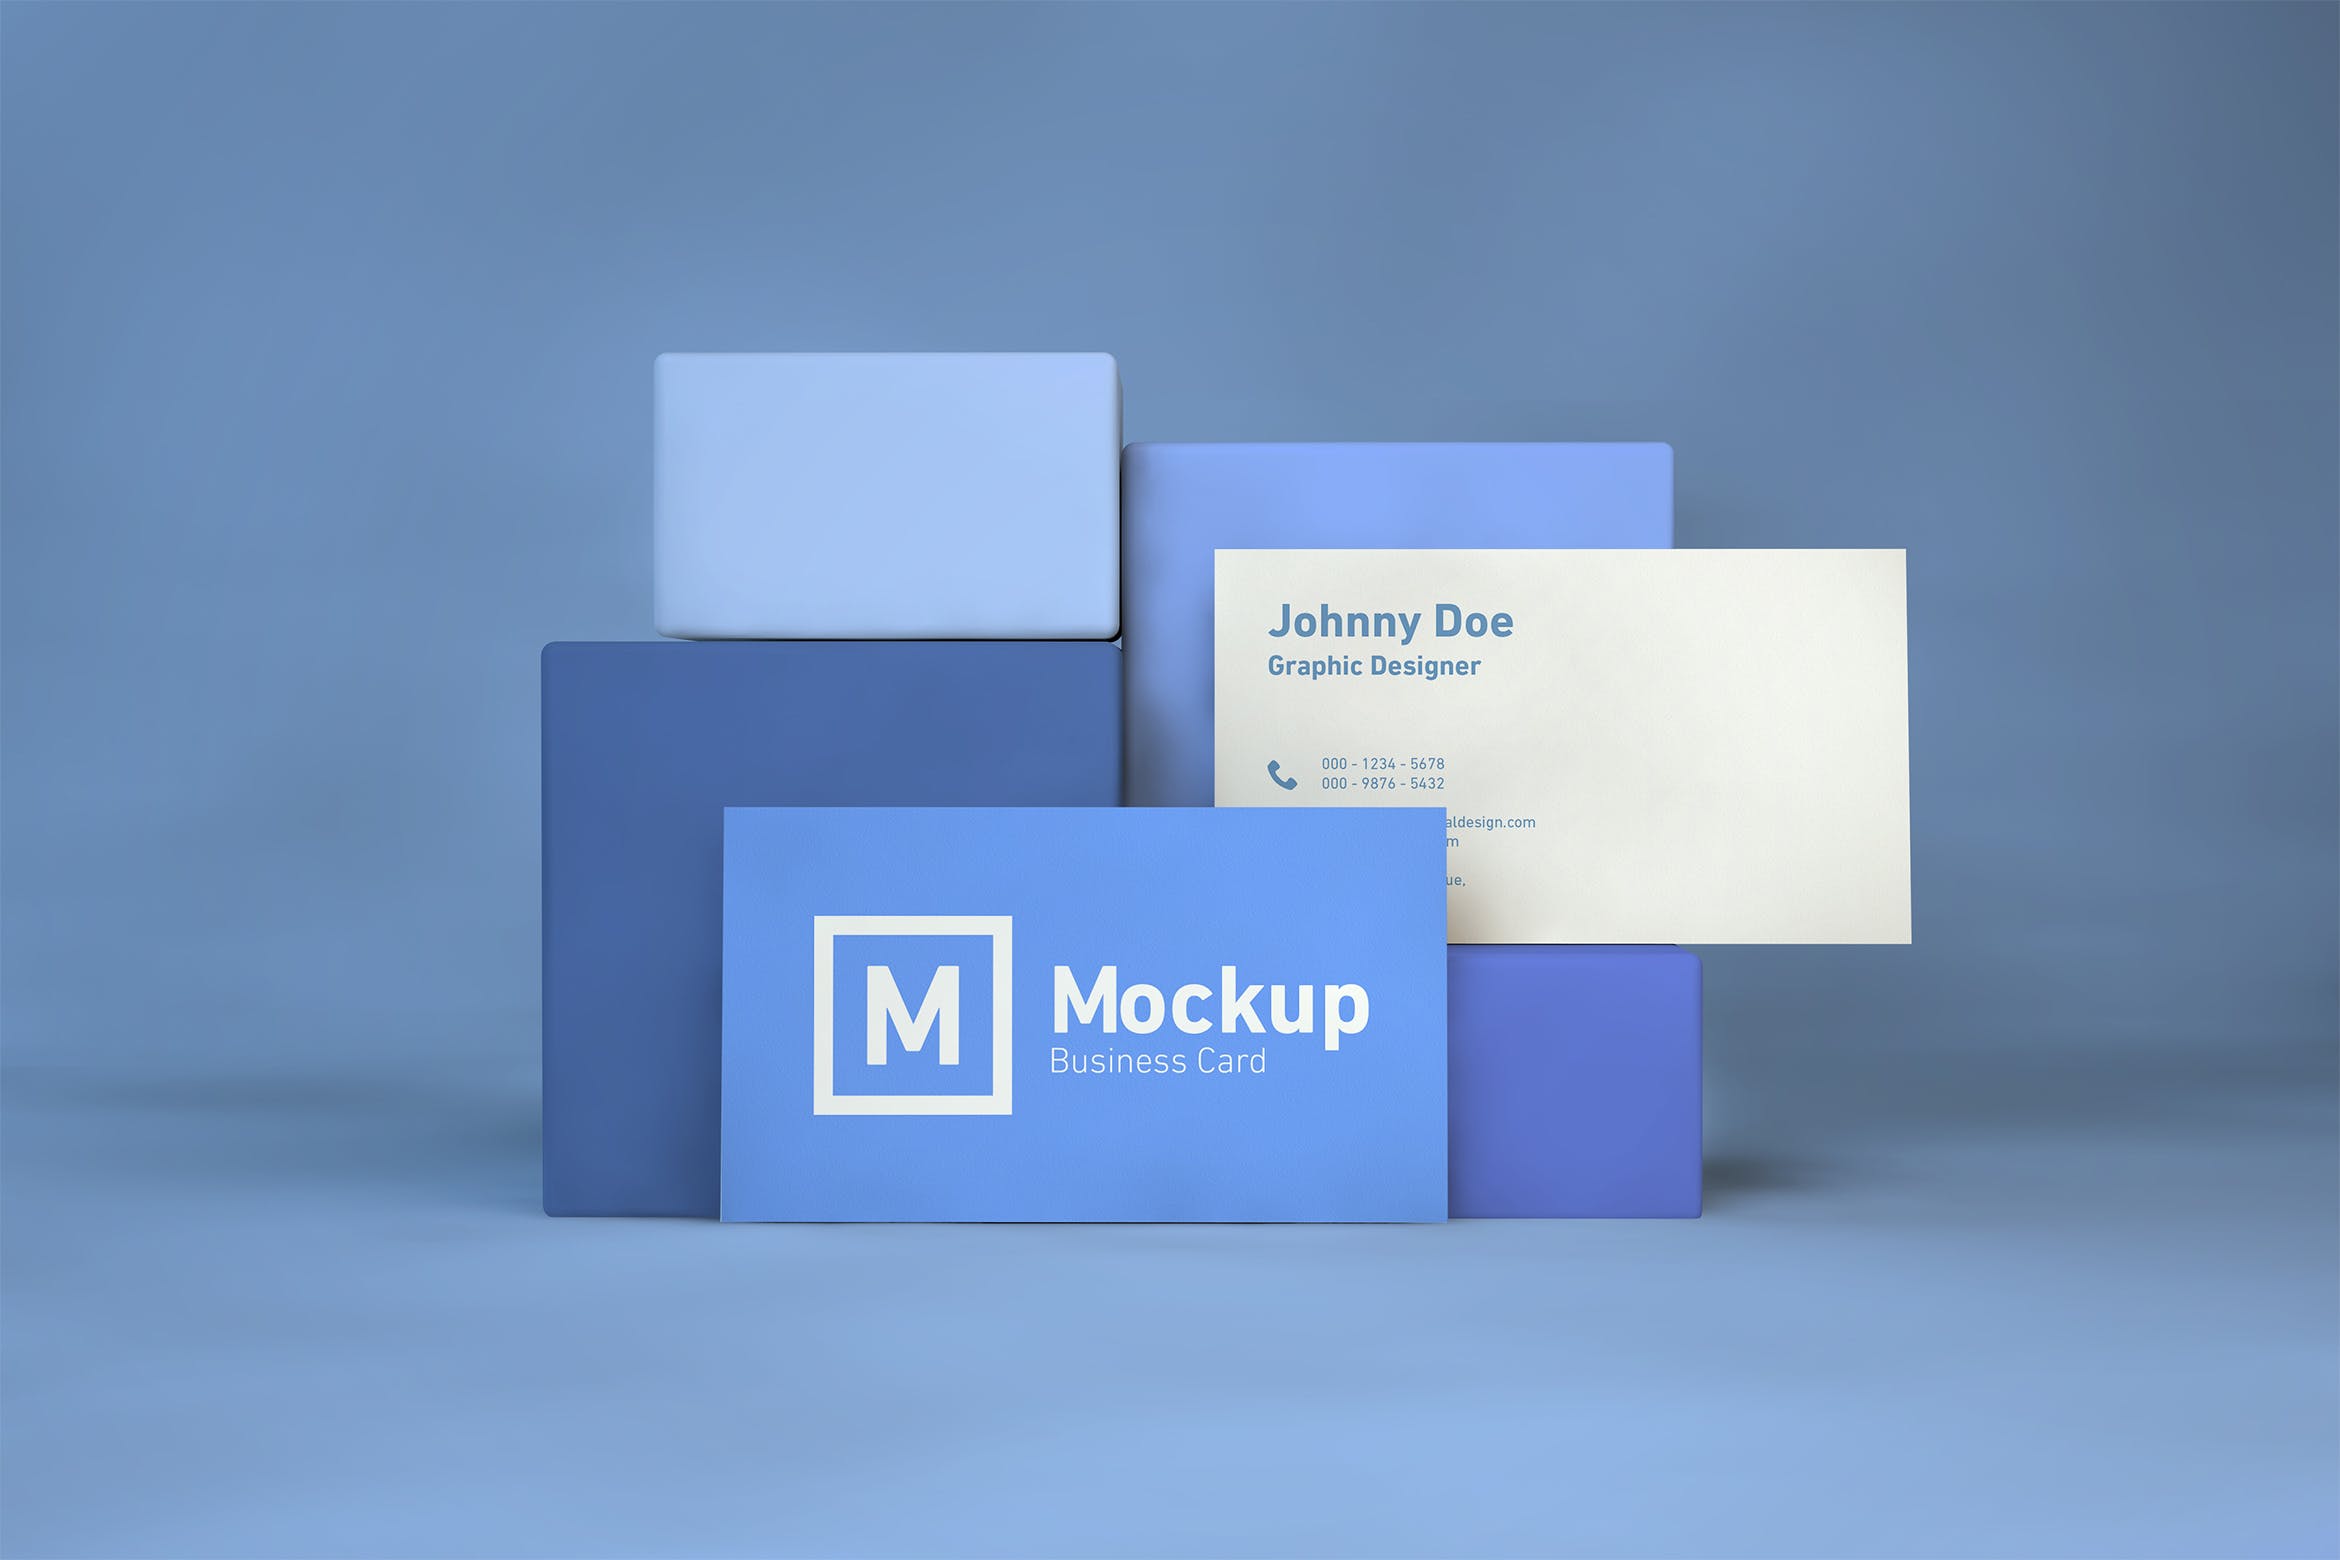 企业名片双面设计效果展示素材库精选 Business Card On Blocks Mockup插图